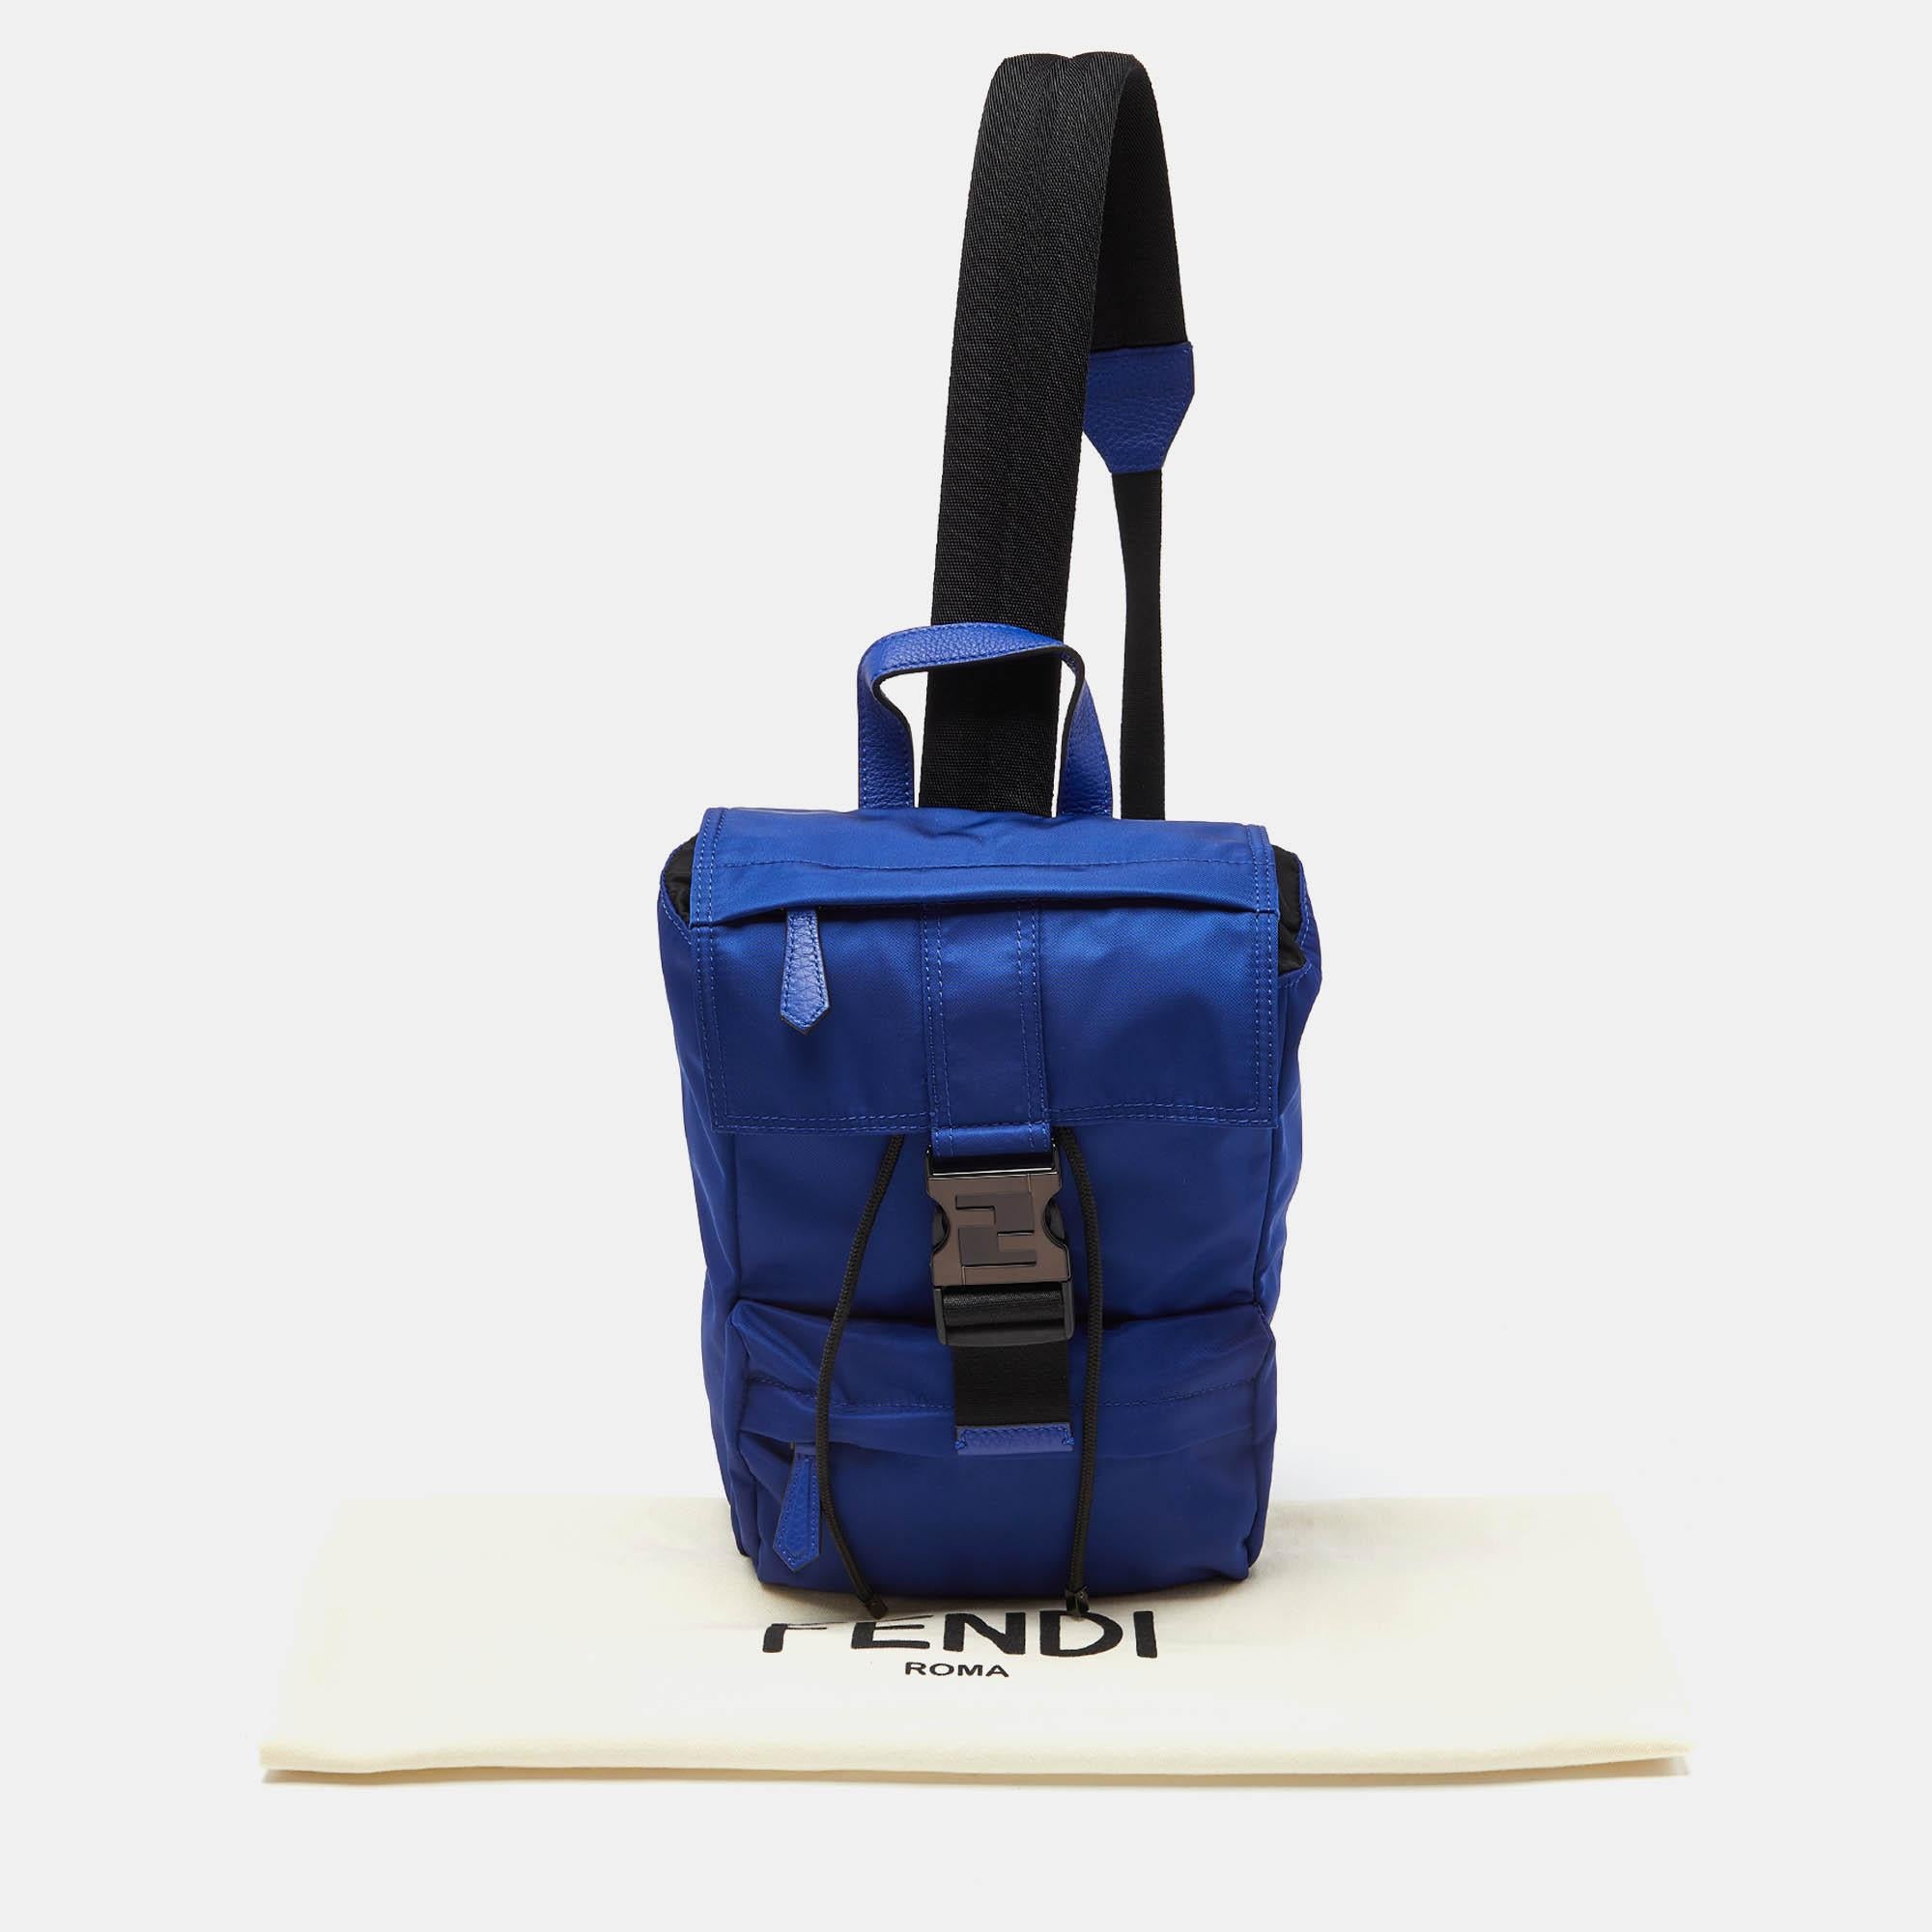 Fendi Blue/Black Nylon Small Fendiness Sling Backpack 8